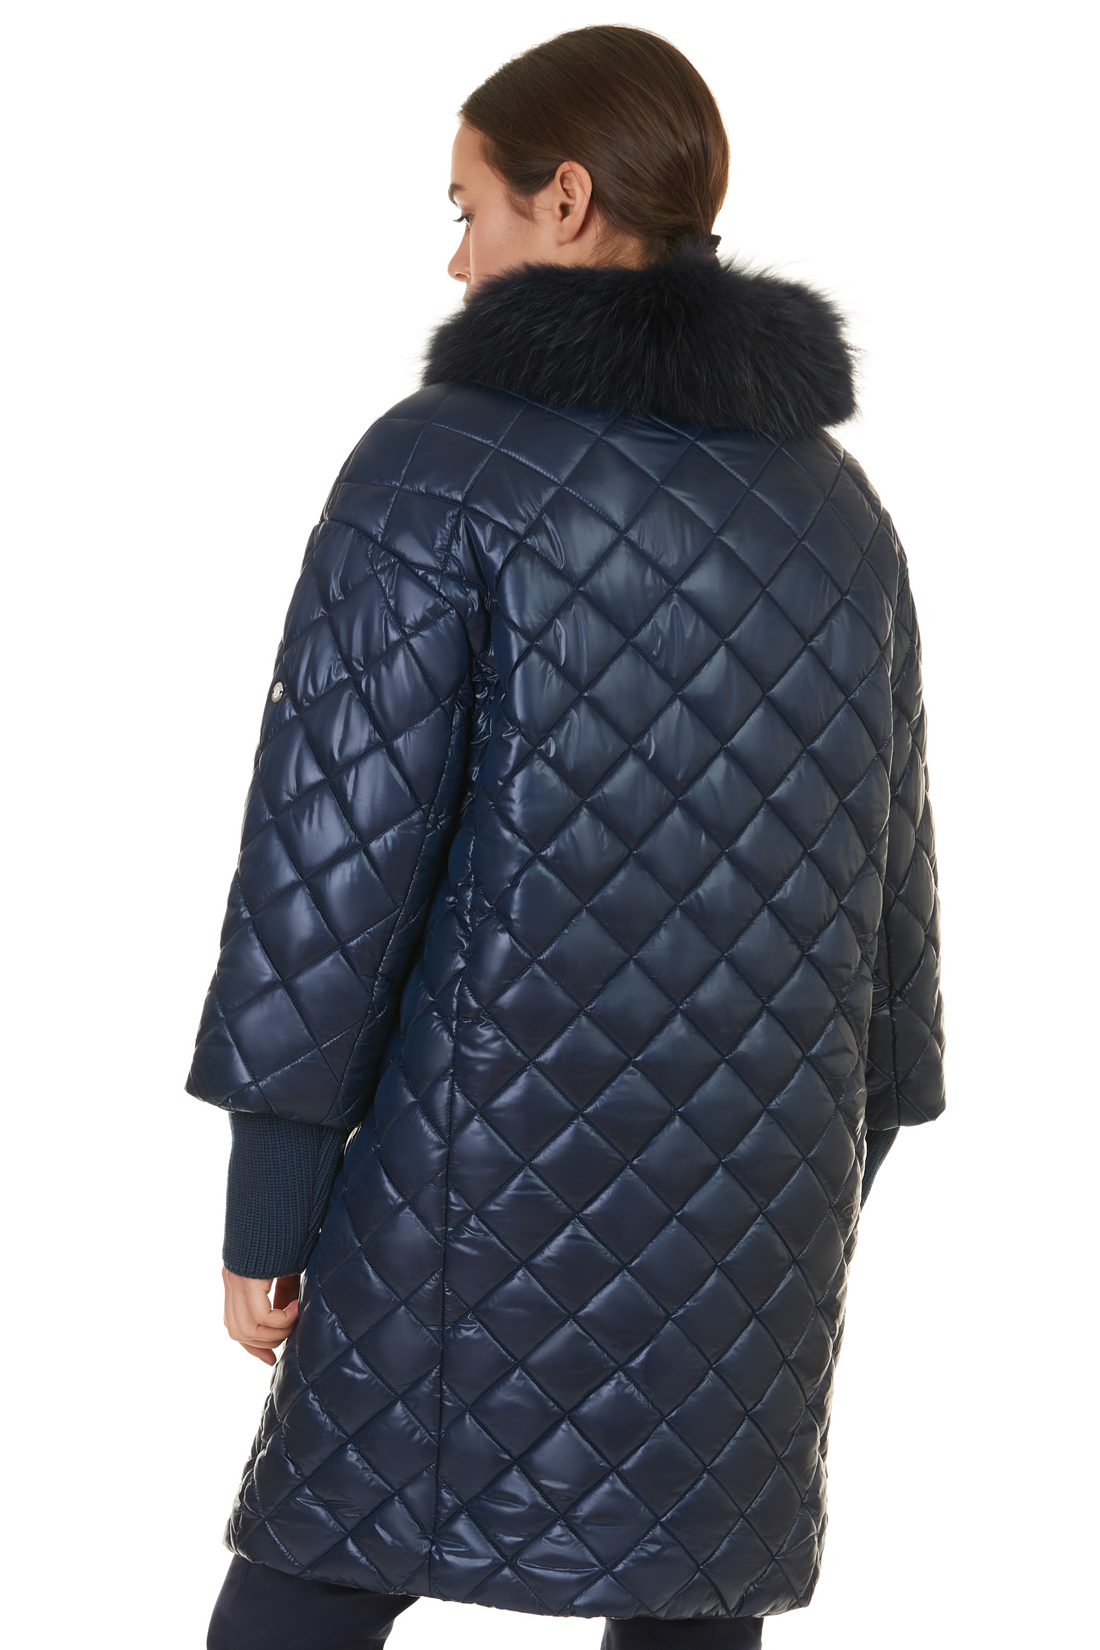 Куртка с меховым воротником и съёмными манжетами (арт. baon B037527), размер L, цвет синий Куртка с меховым воротником и съёмными манжетами (арт. baon B037527) - фото 2